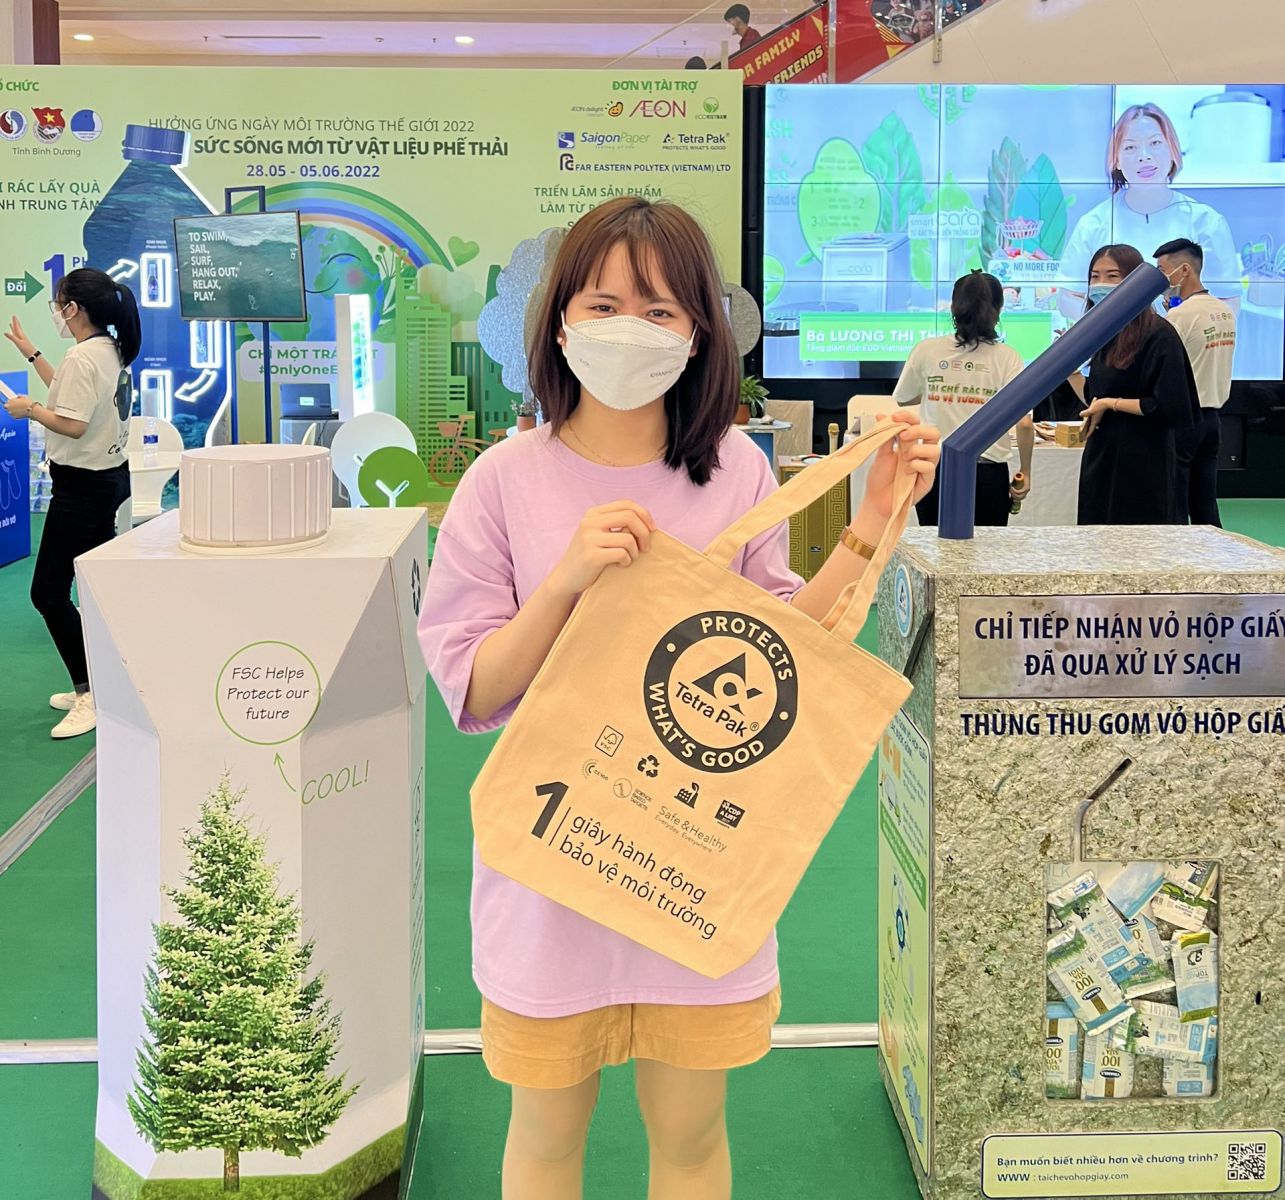 “Tái chế rác thải - Bảo vệ tương lai” và chương trình thu gom vỏ hộp giấy